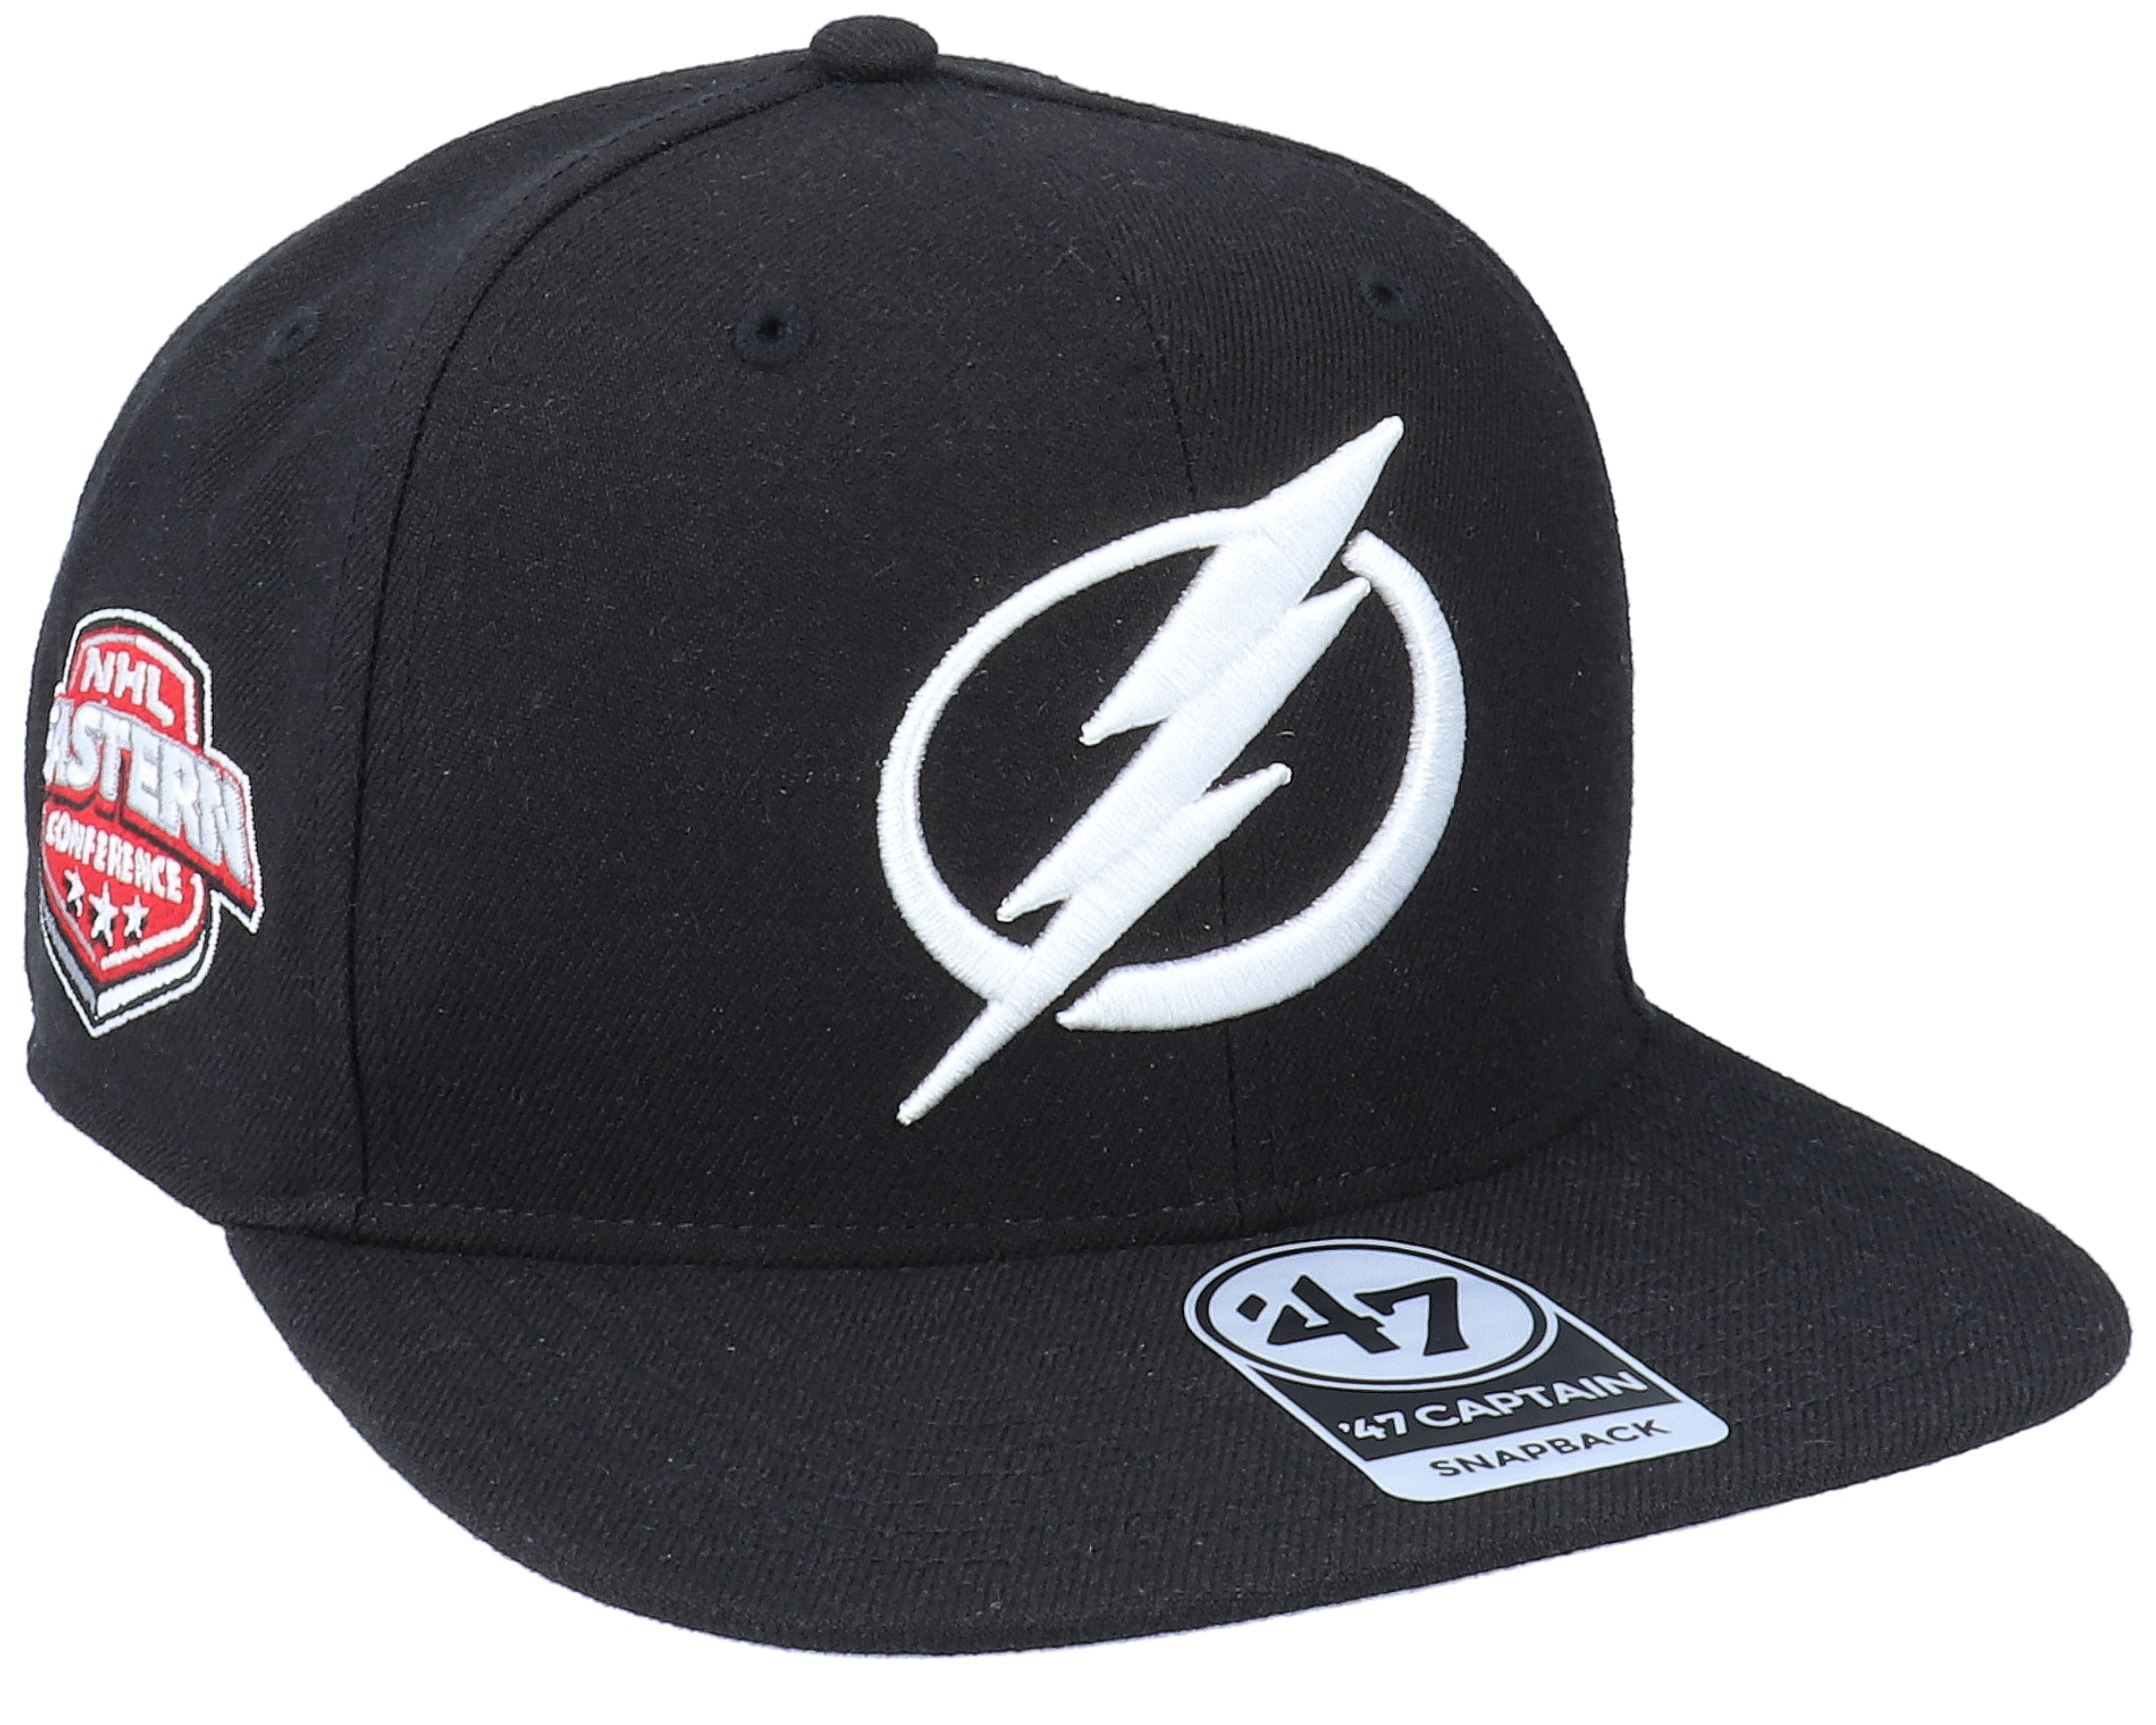 Tampa Bay Lightning '47 Adjustable Snapback Black Captain Hat